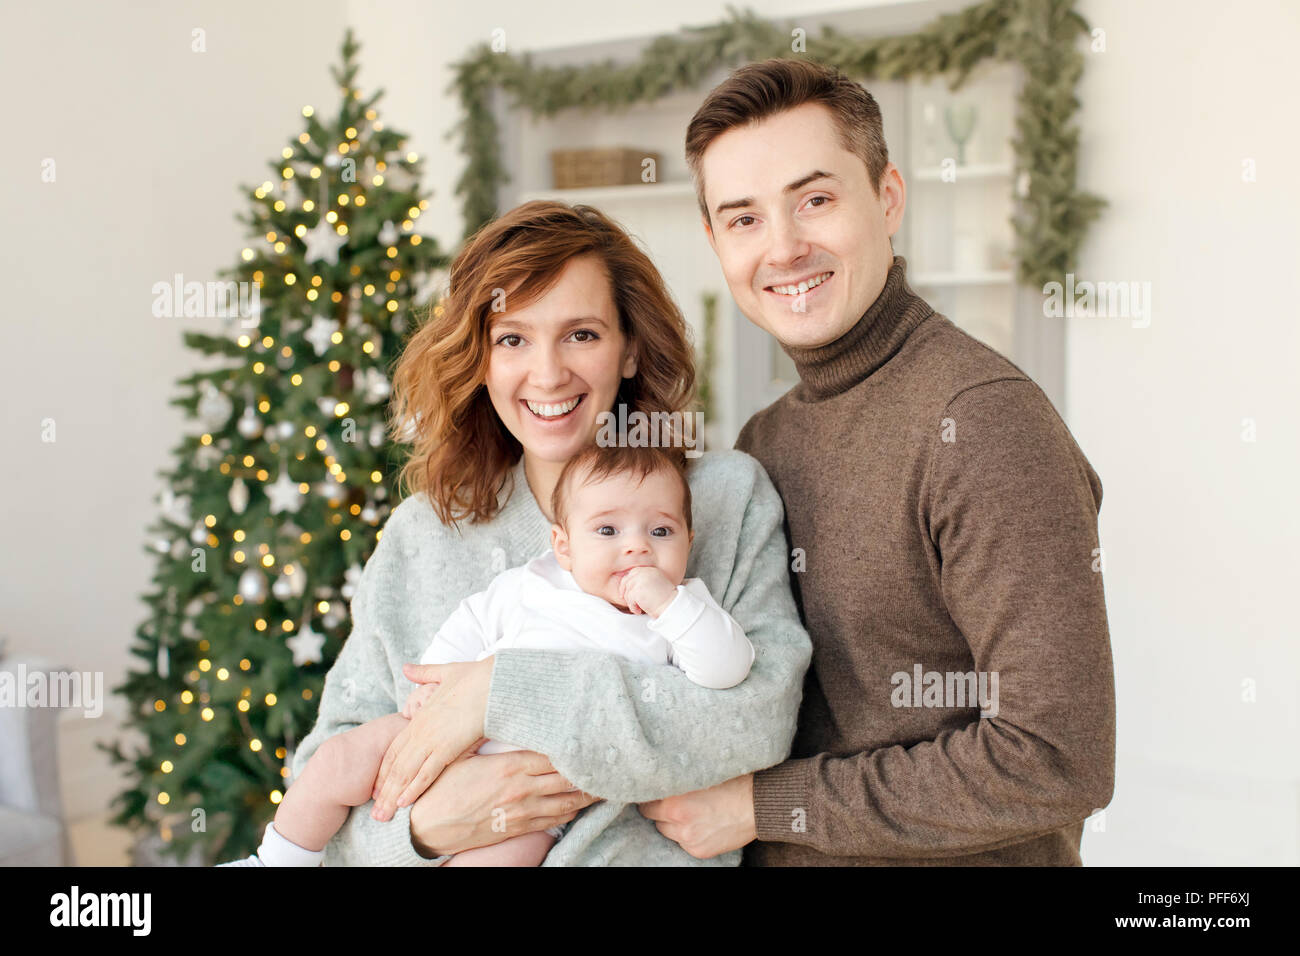 Les parents et l'enfant près de l'arbre de Noël Banque D'Images